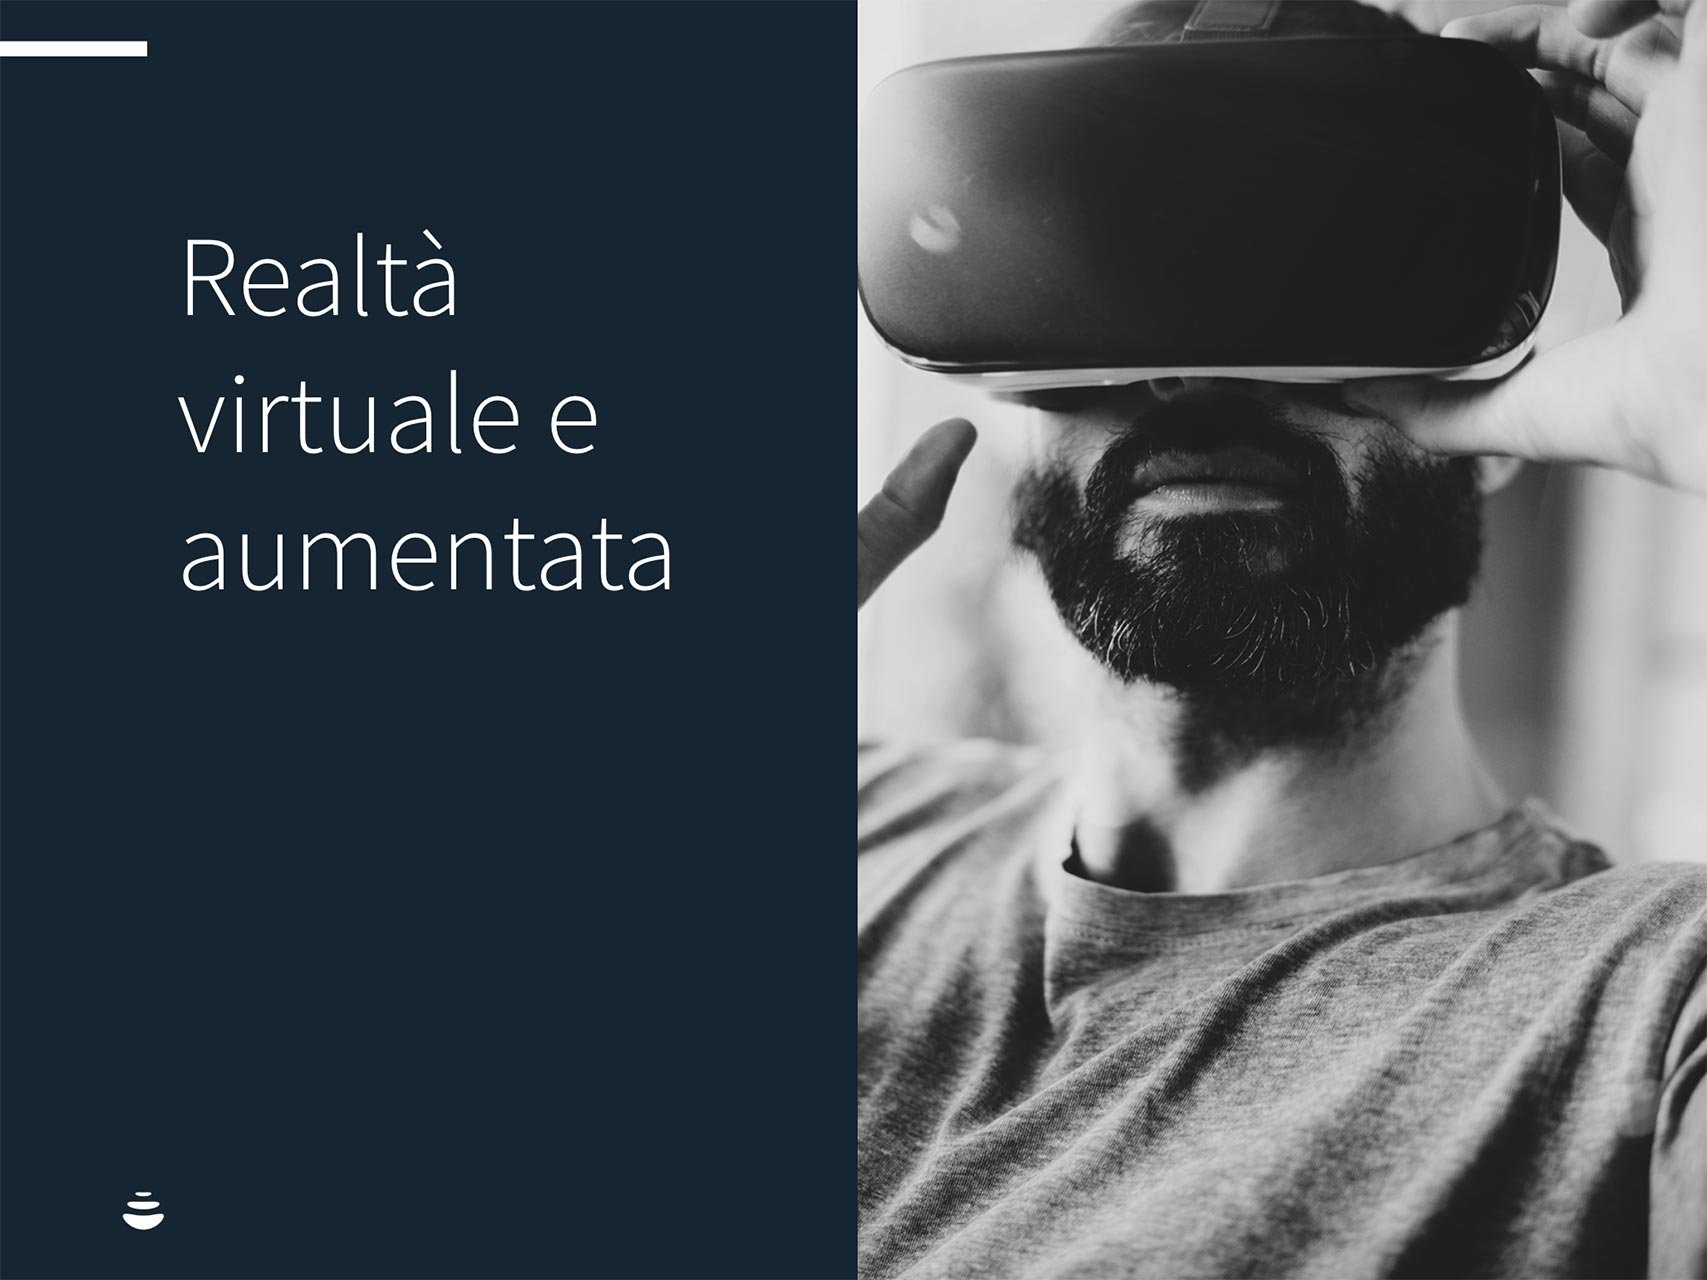 marketing trend 2019 2020, realtà virtuale e aumentata